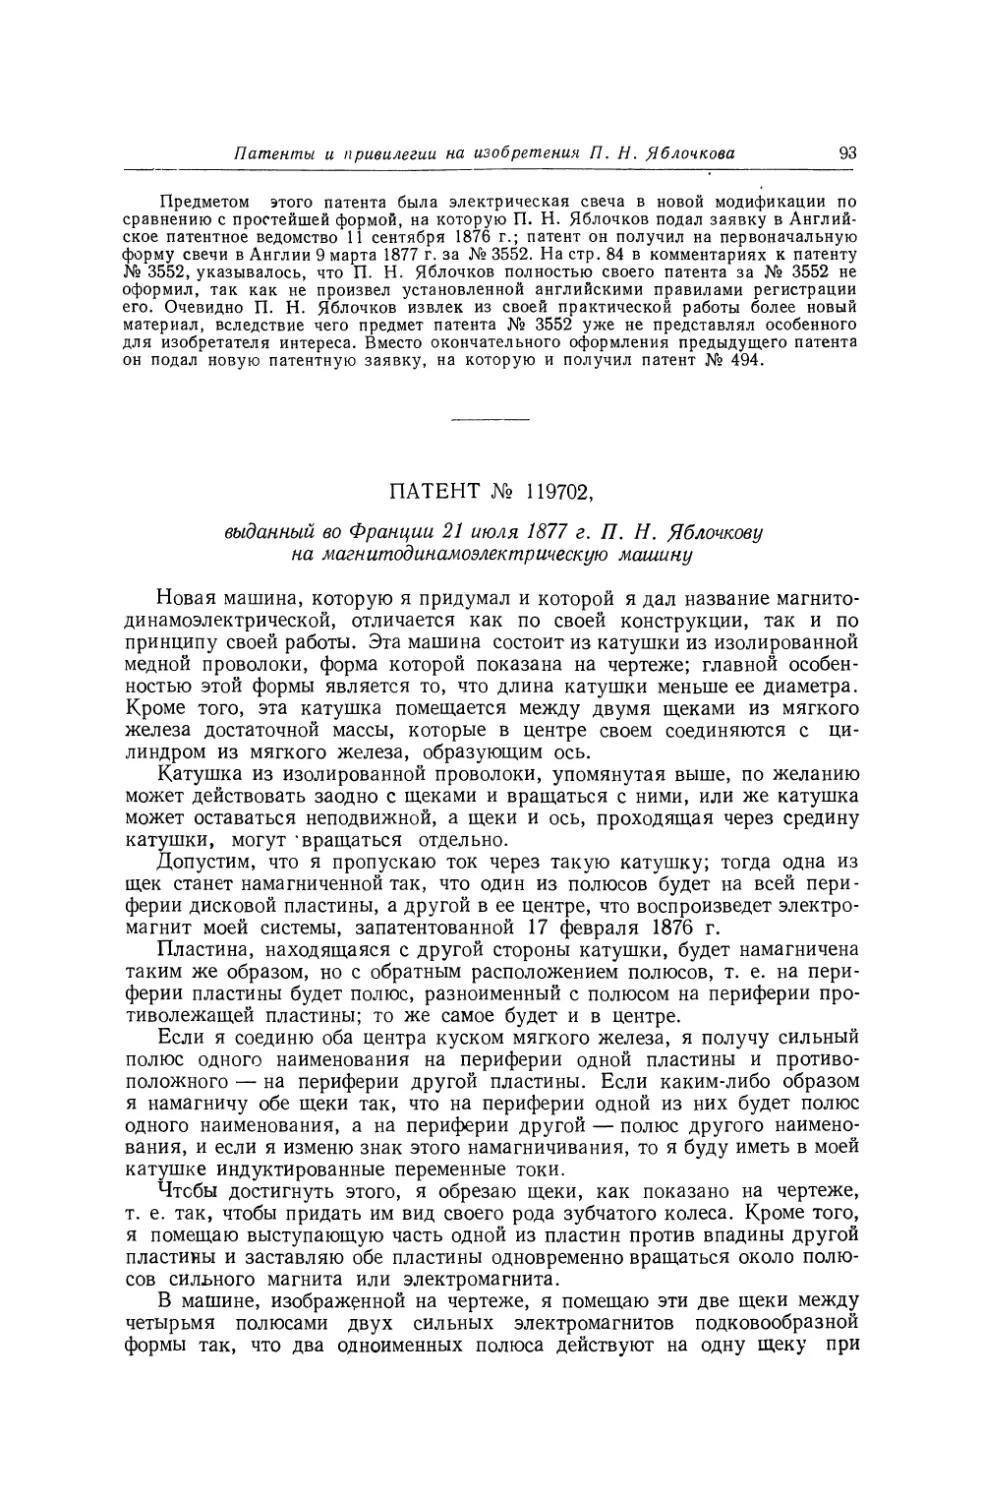 Патент № 119702, выданный во Франции 21 июля 1877 г. П. Н. Яблочкову на магнитодинамоэлектрическую машину